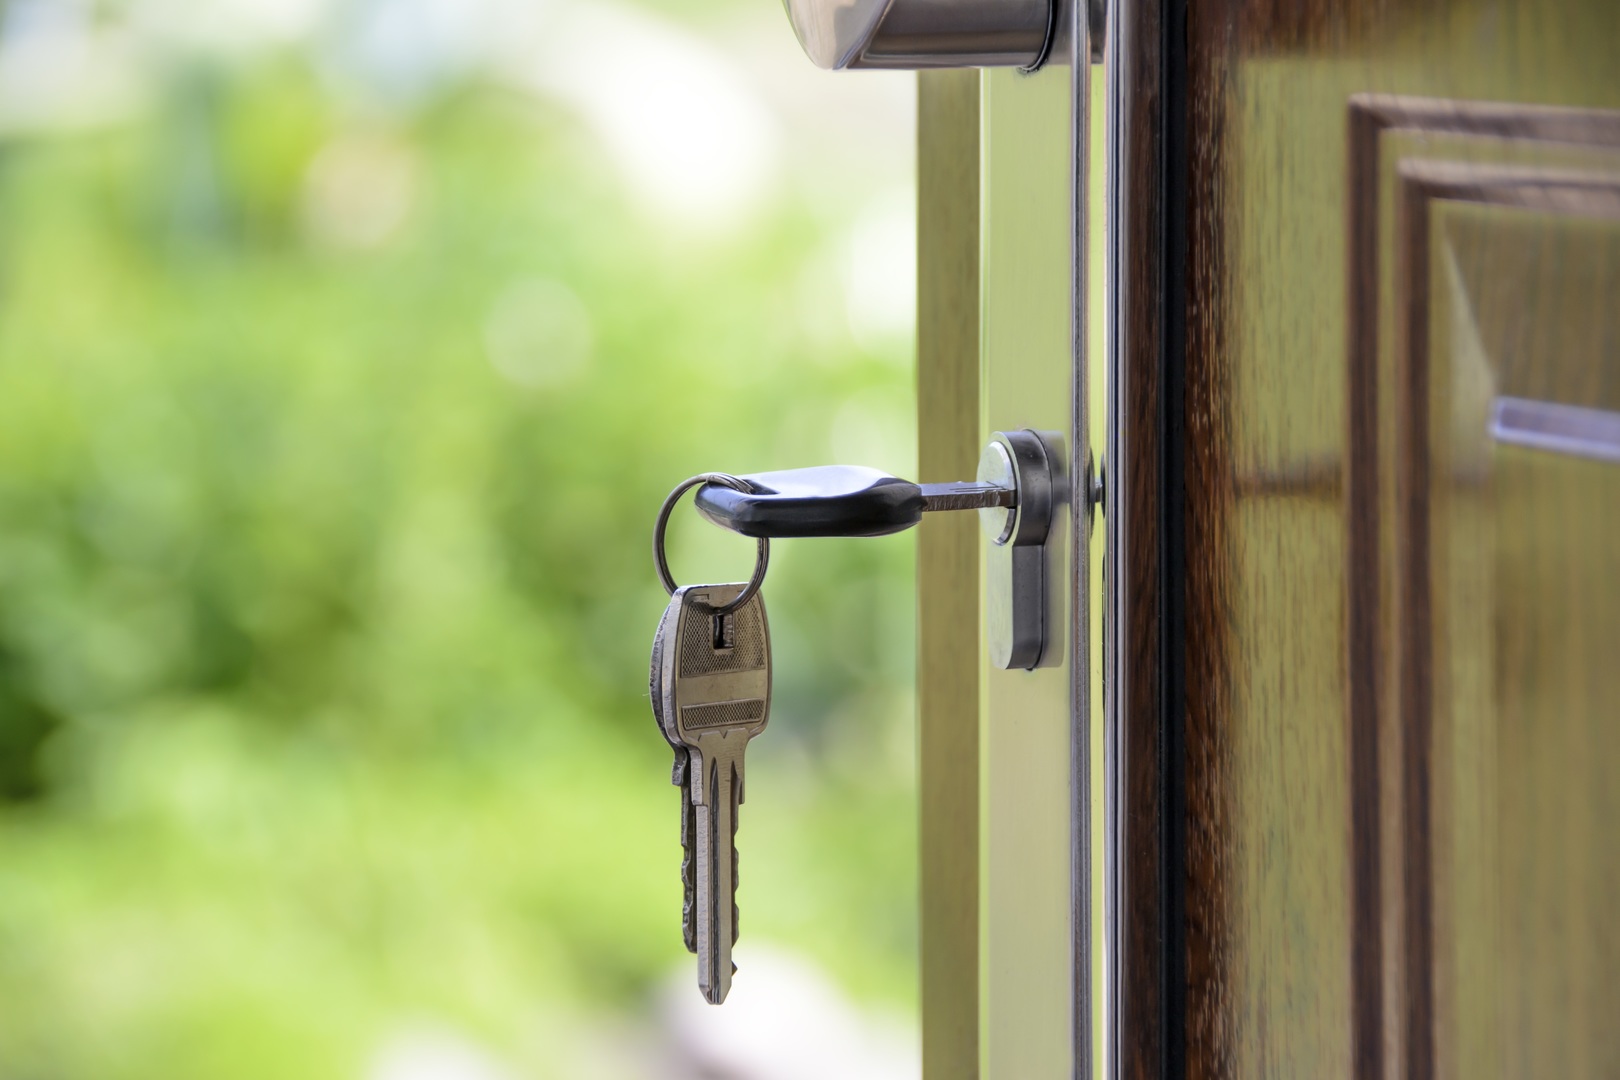 Subsidio habitacional sin crédito hipotecario: conoce como acceder a la casa propia